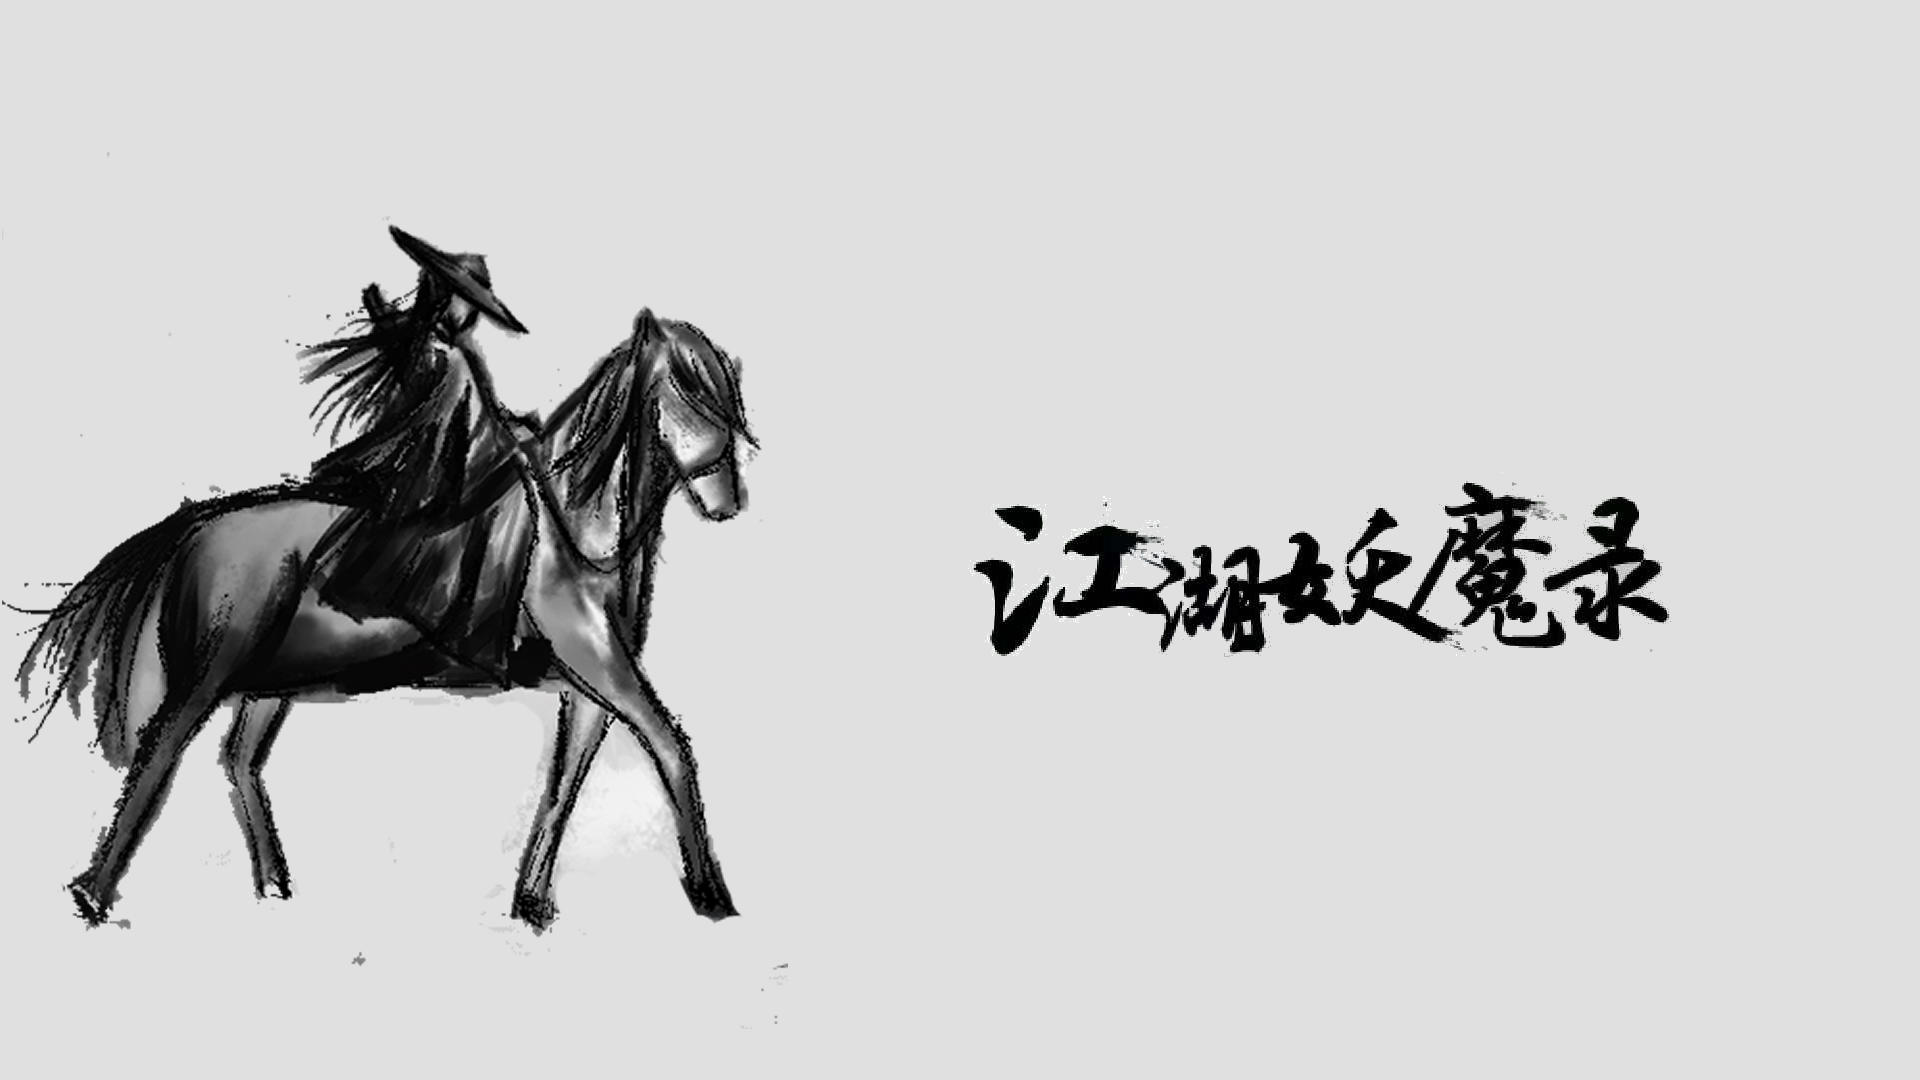 Banner of Dossiers des démons du Jianghu 